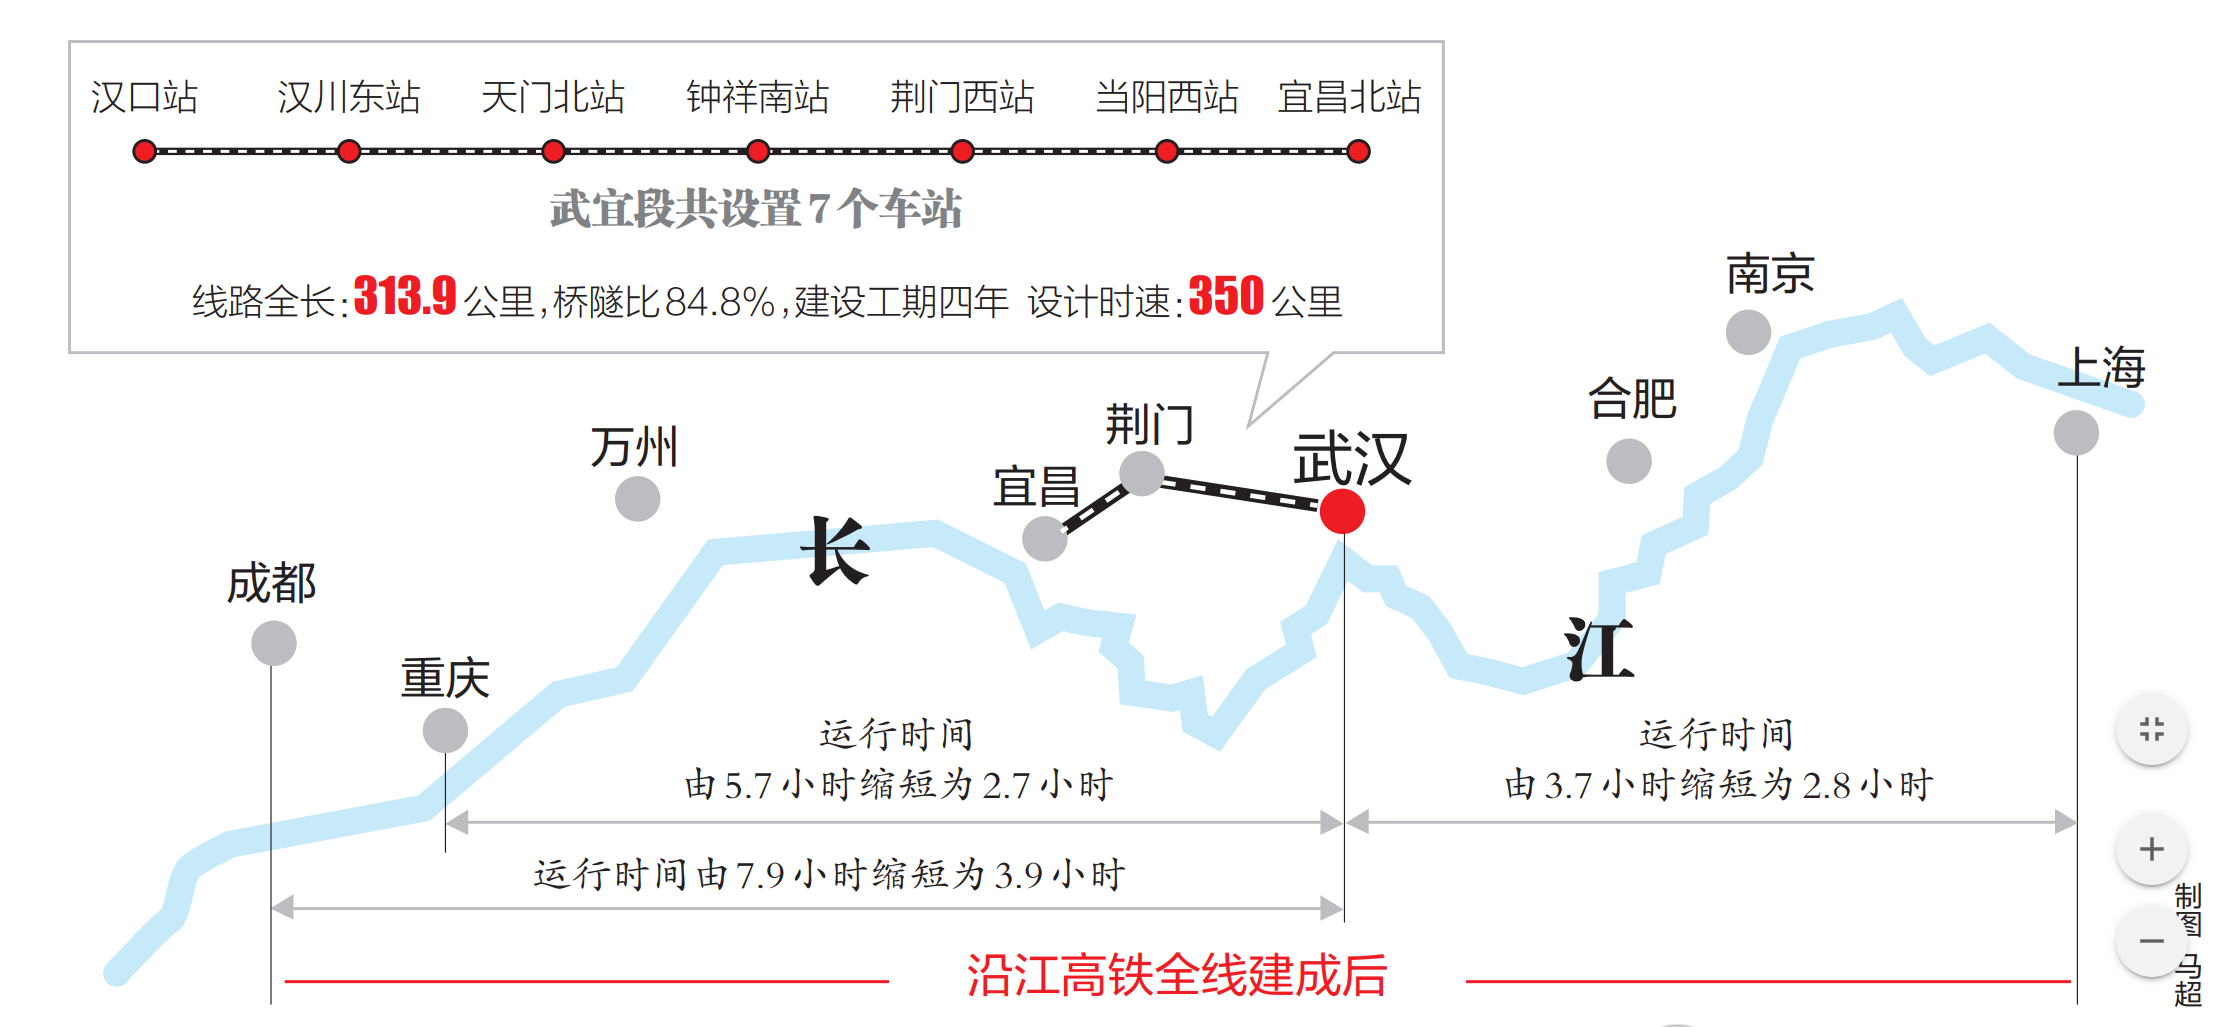 武汉襄阳枢纽地位更进一步提升 湖北铁路建设再迎高光时刻 - 湖北省人民政府门户网站